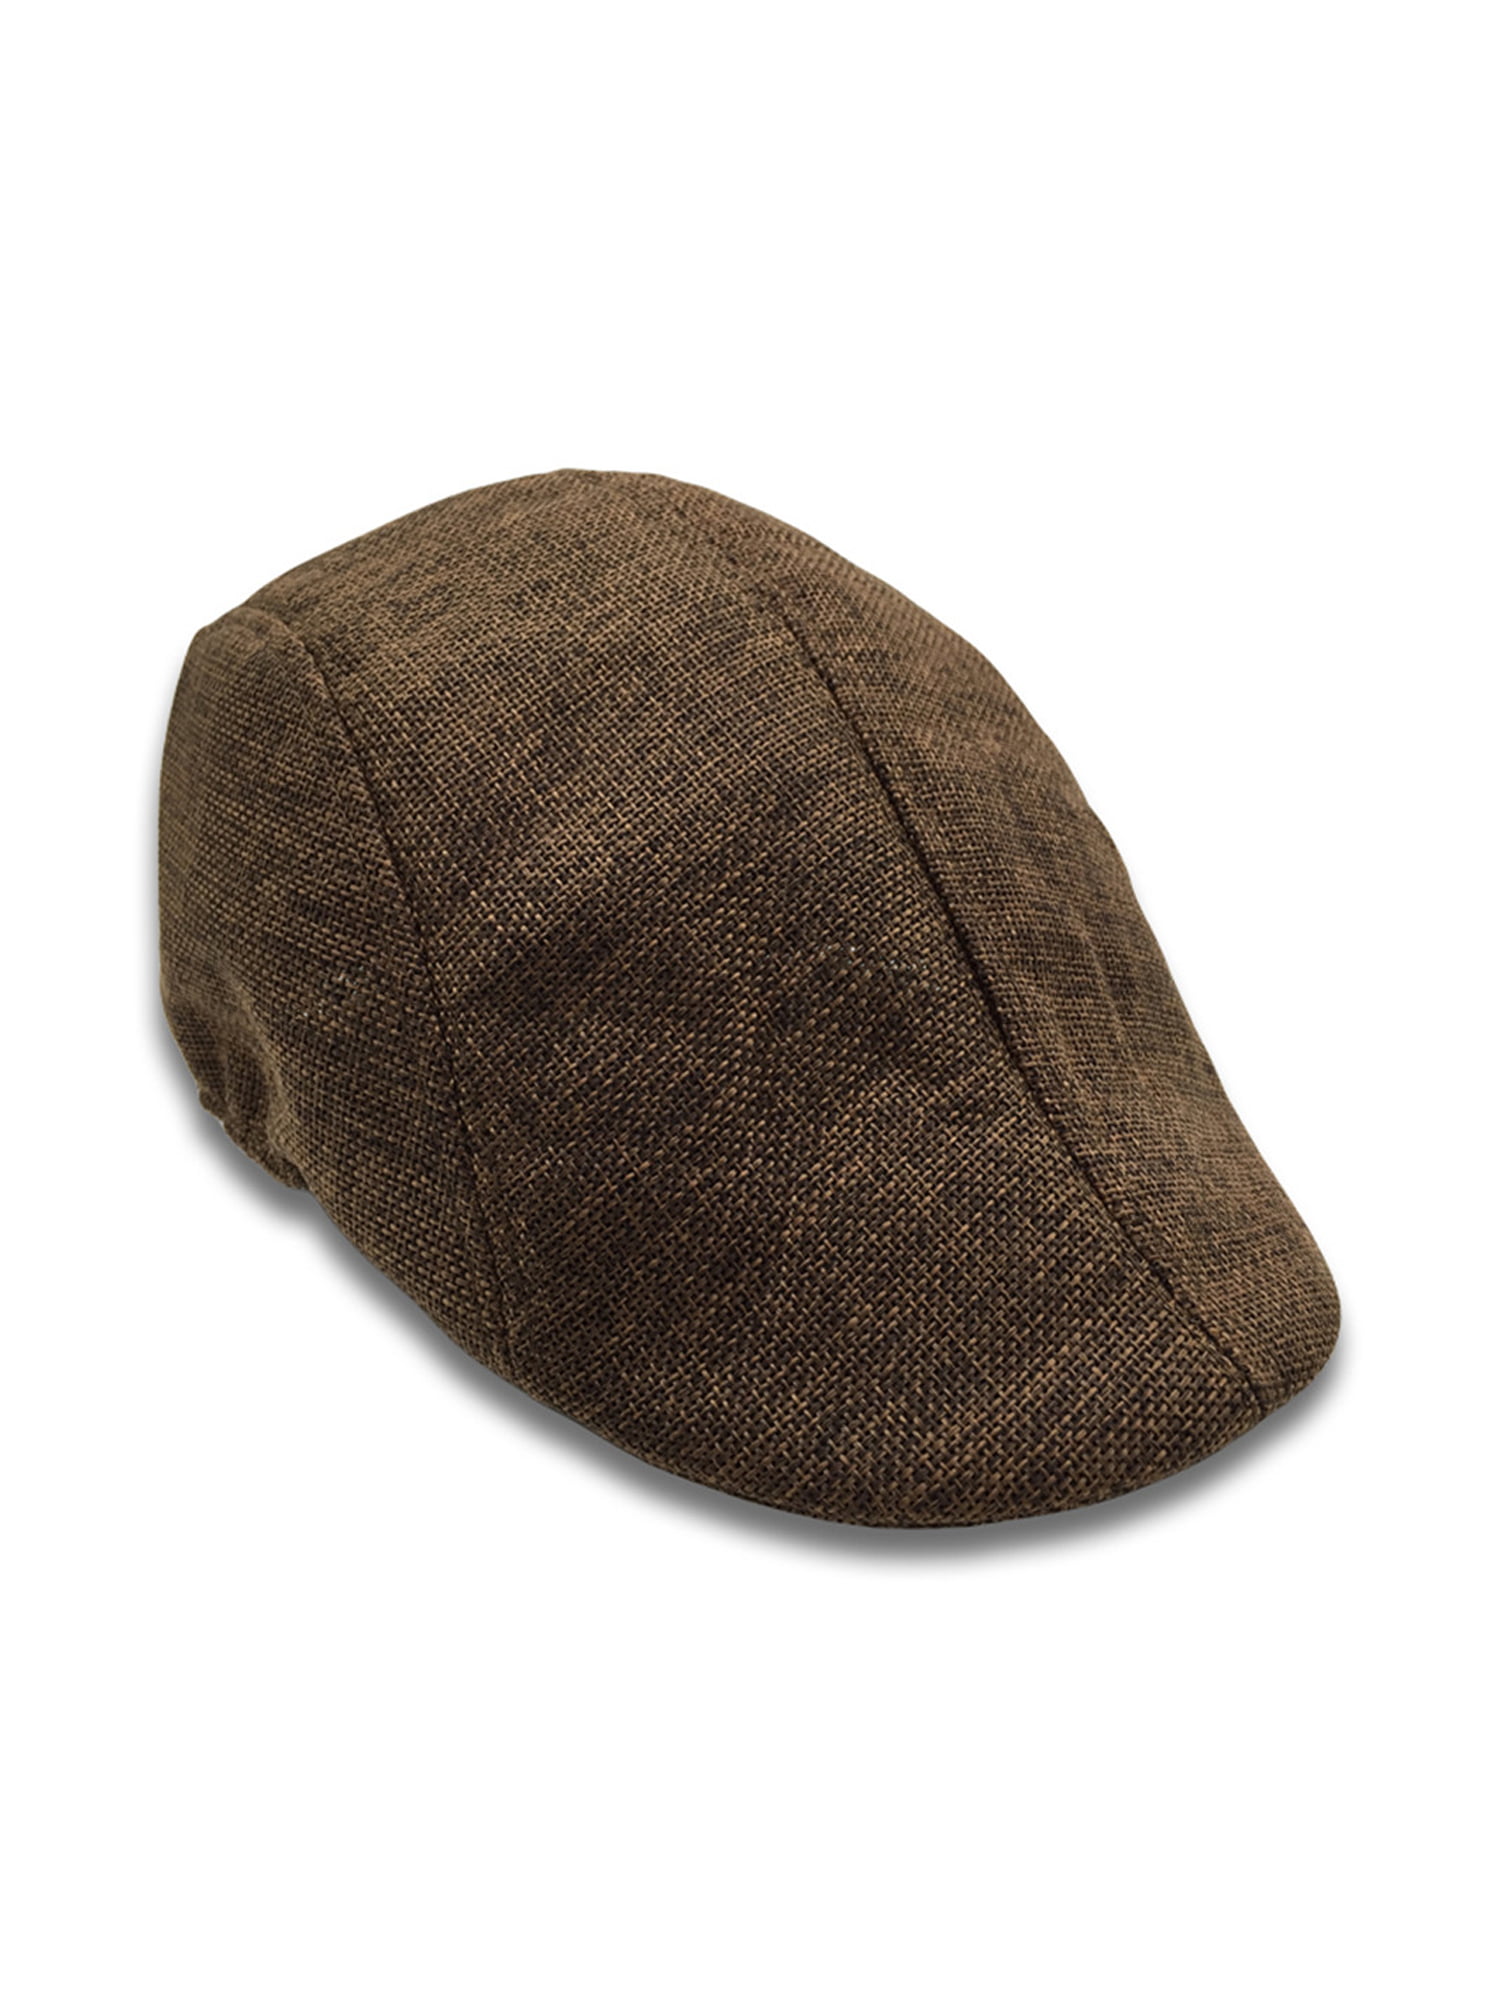 Classic Vintage Hat Beret Ear Flat Cap MIX BROWN Newsboy Cap for Men Women 